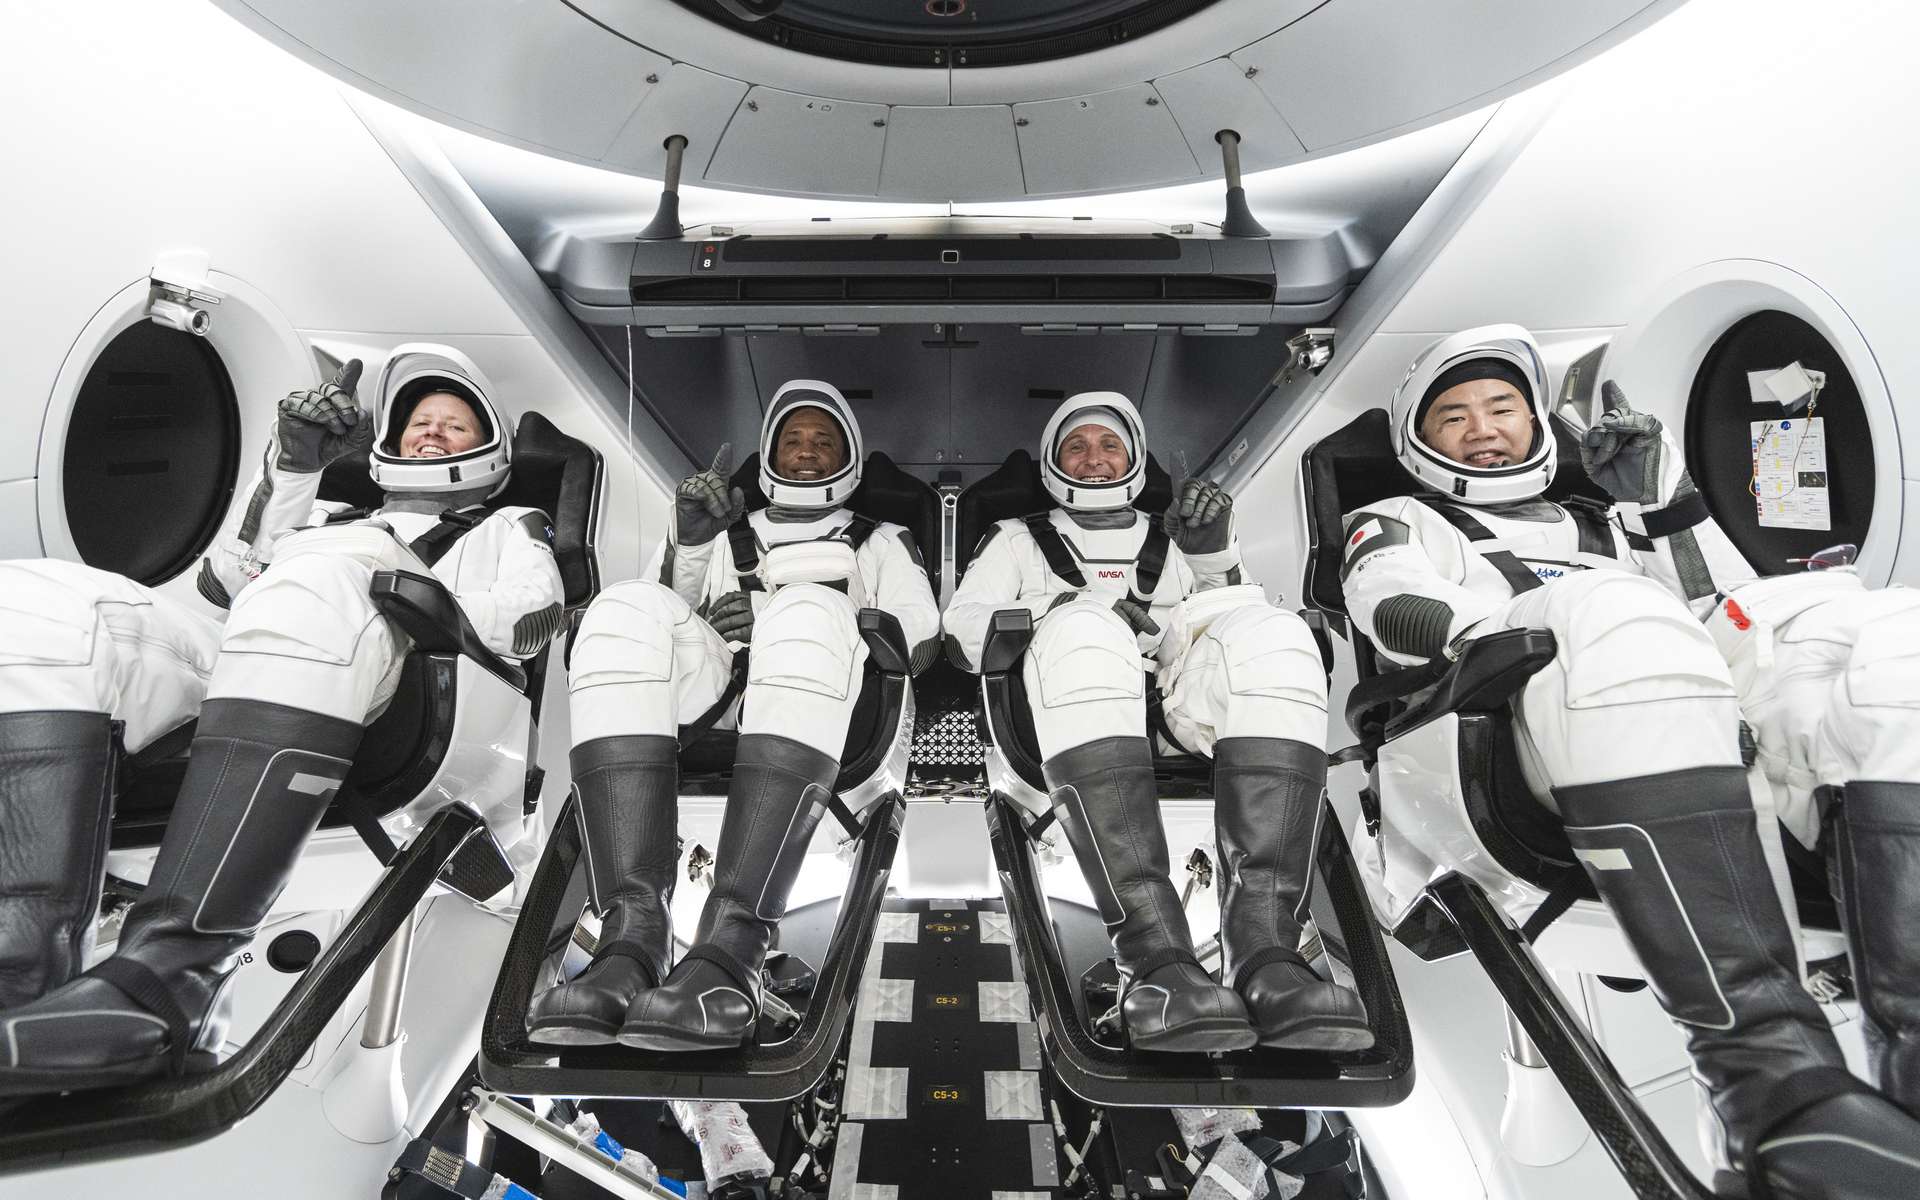 Le lancement de Crew-1, premier vol commercial de la Nasa avec SpaceX, aura lieu ce week-end